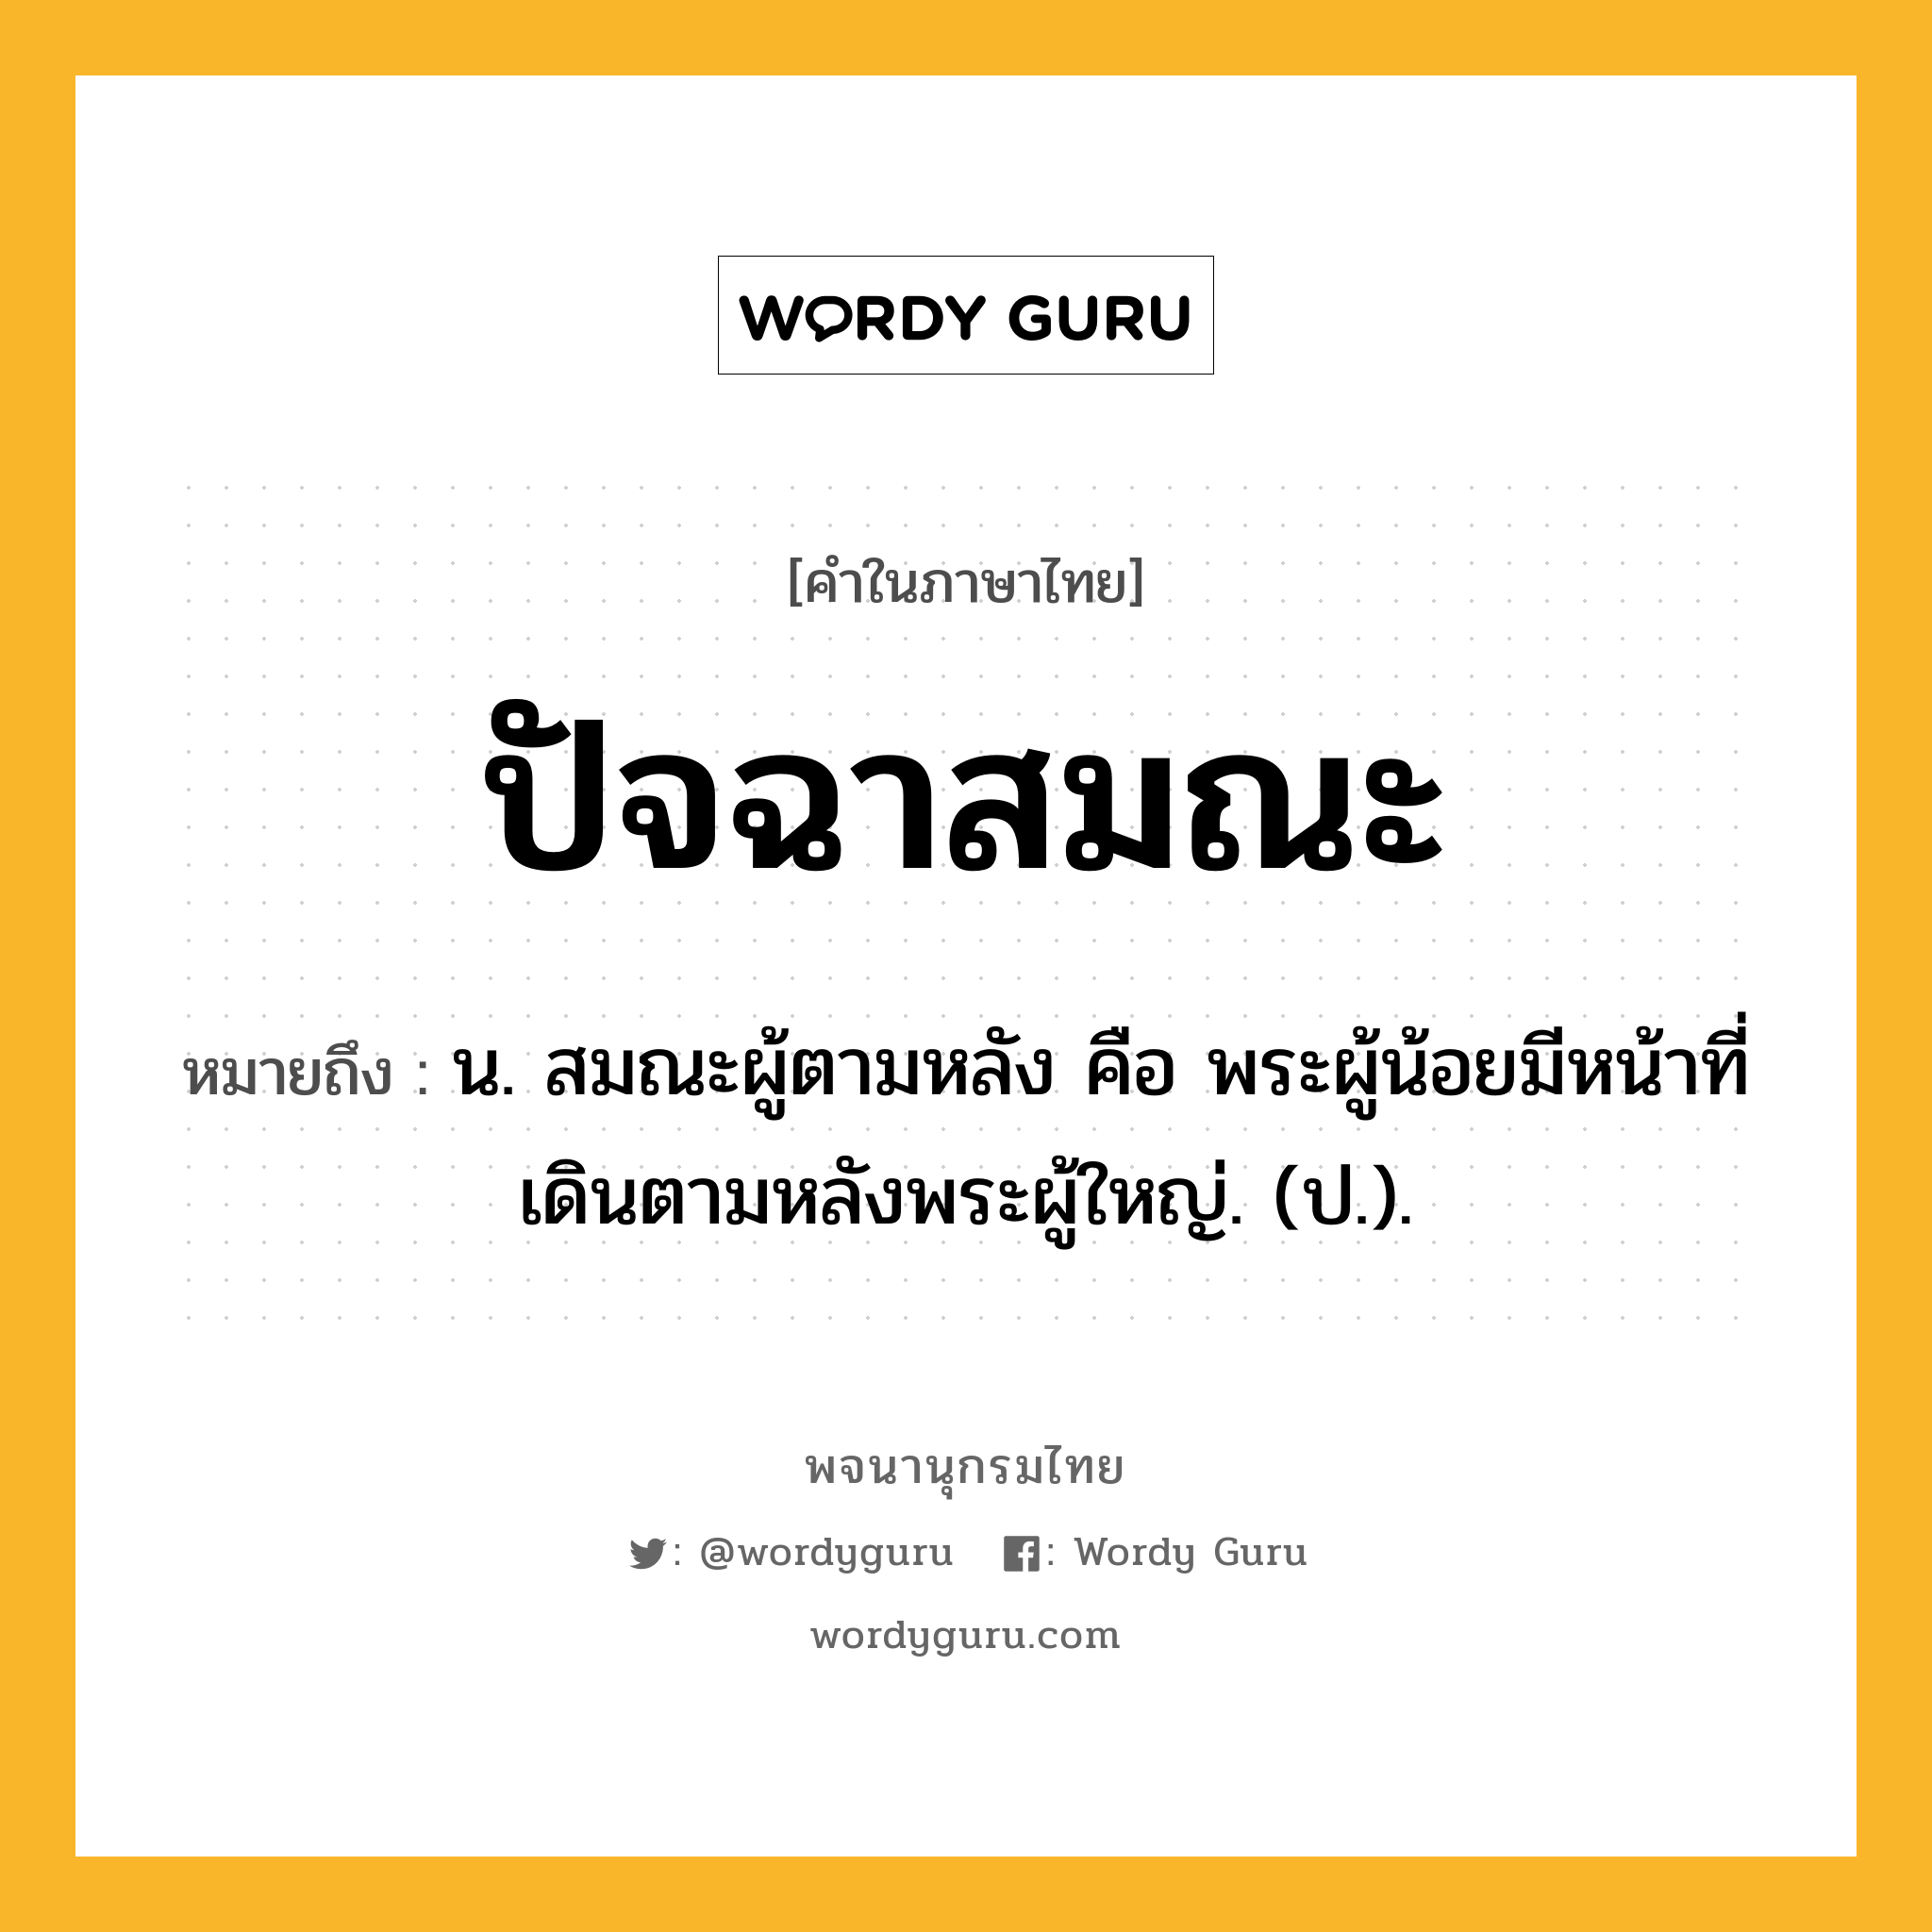 ปัจฉาสมณะ หมายถึงอะไร?, คำในภาษาไทย ปัจฉาสมณะ หมายถึง น. สมณะผู้ตามหลัง คือ พระผู้น้อยมีหน้าที่เดินตามหลังพระผู้ใหญ่. (ป.).